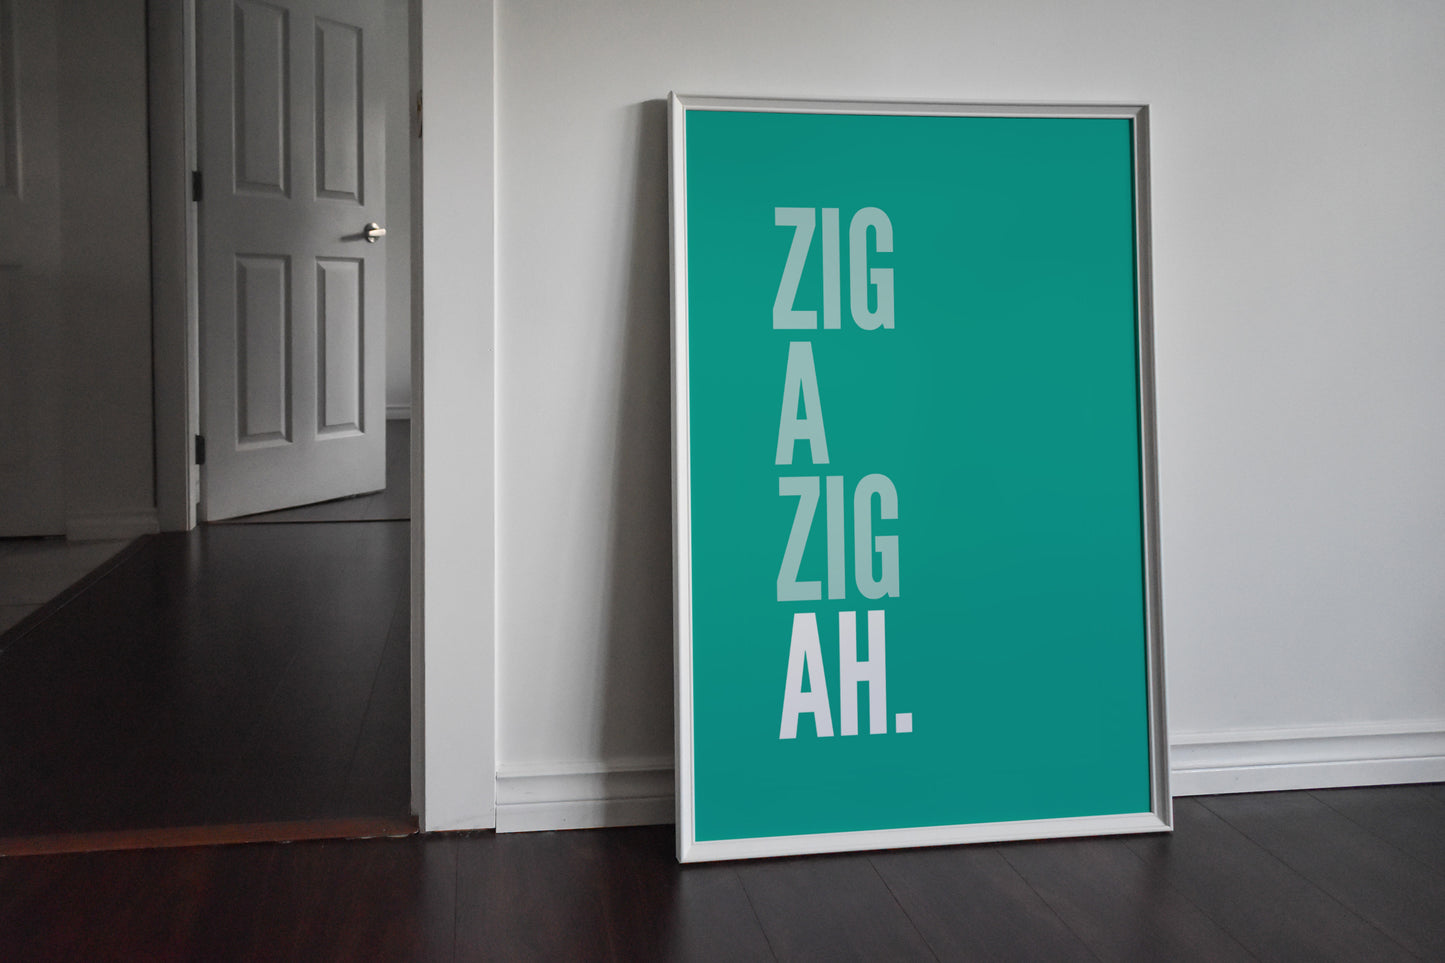 Zig a Zig Ah Teal Print